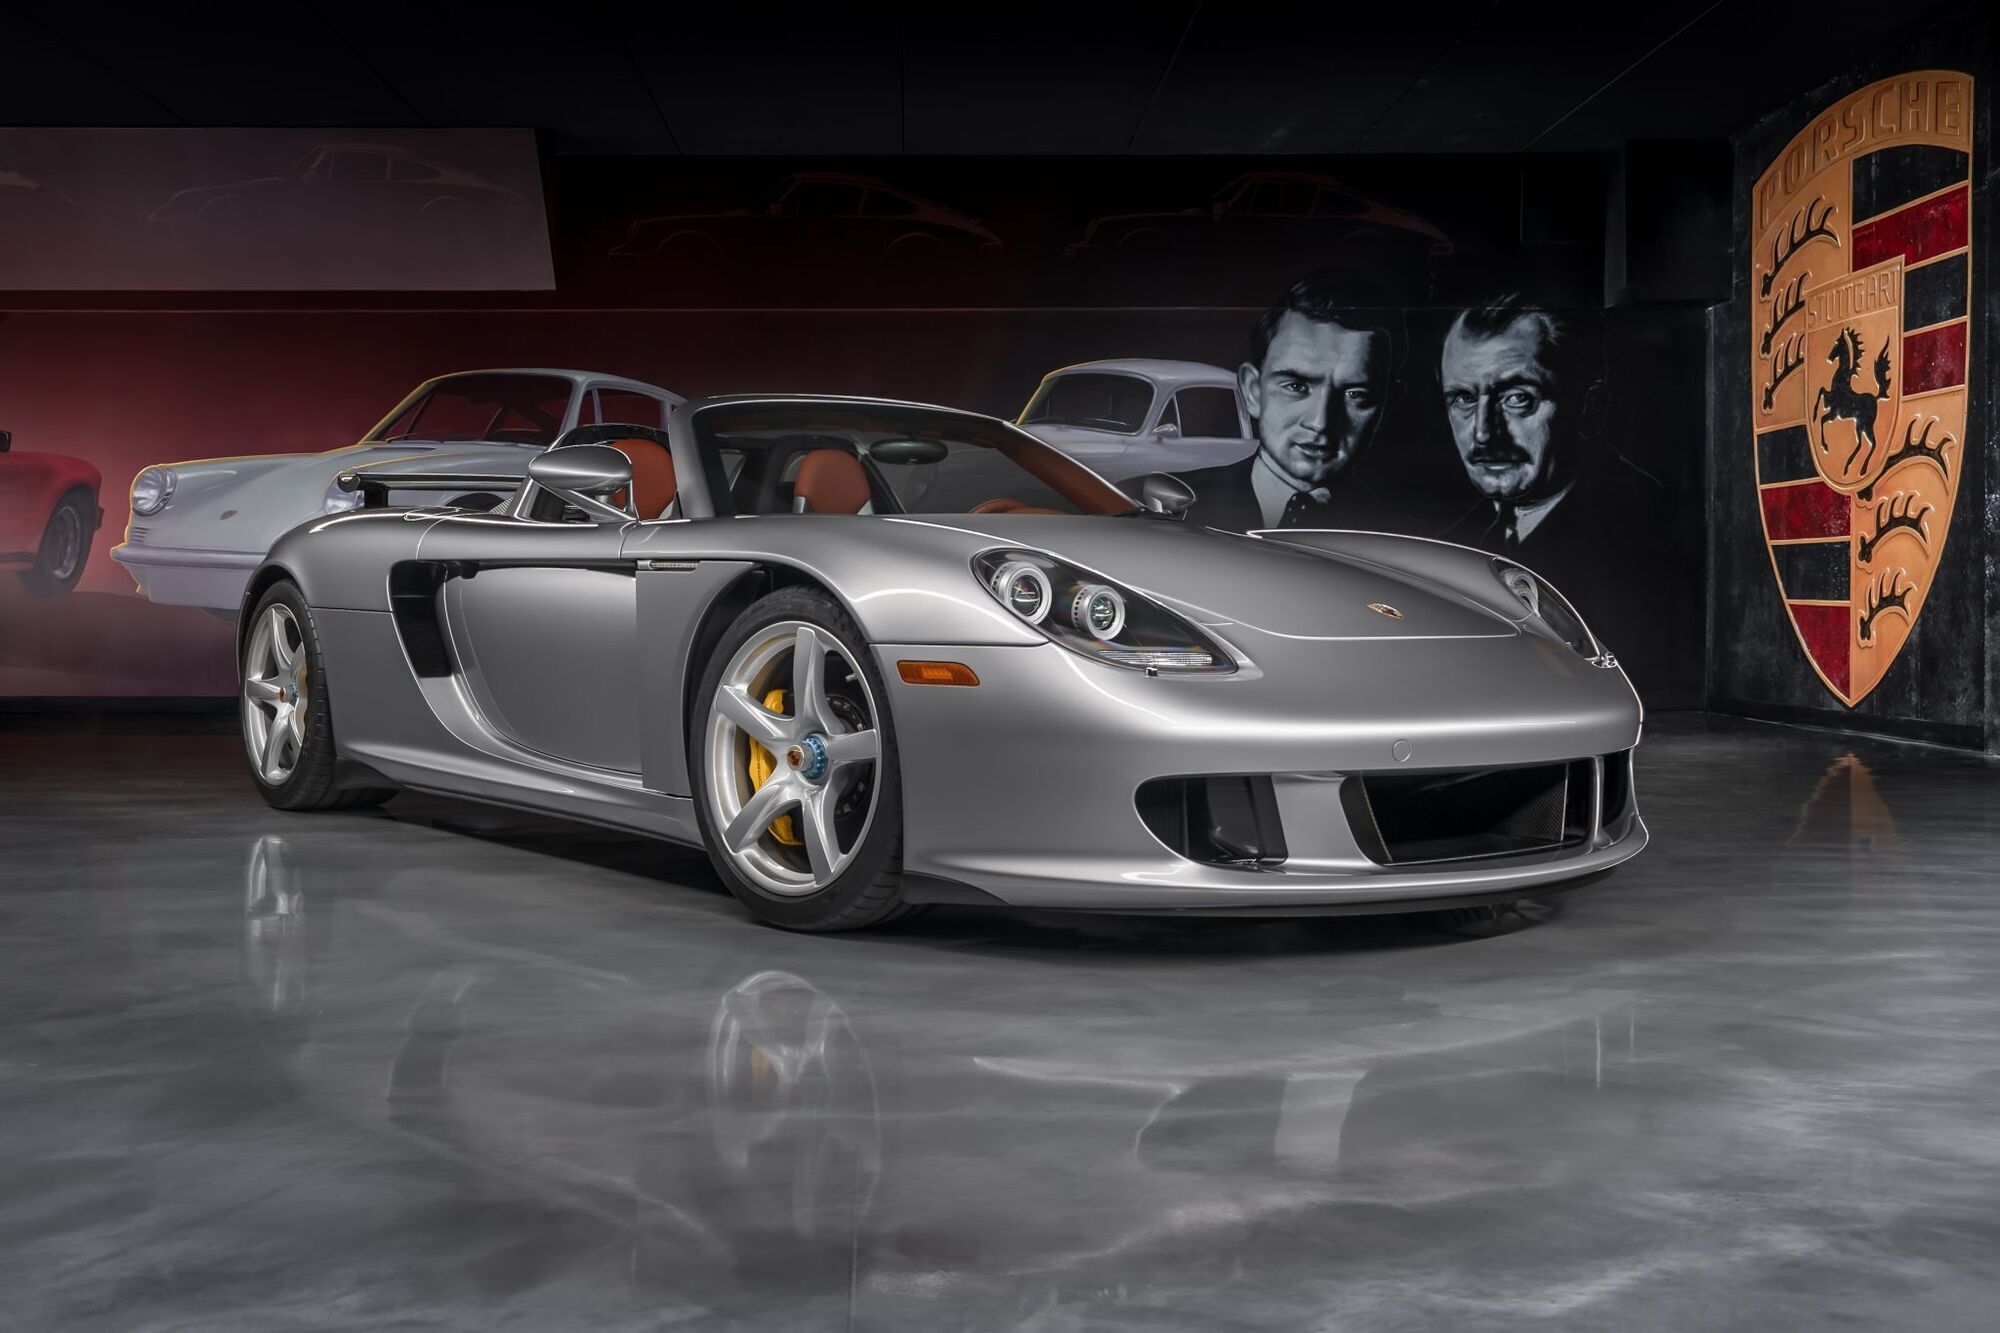 Porsche Carrera GT 2005 року випуску придбали за рекордно високу ціну $1,9 млн